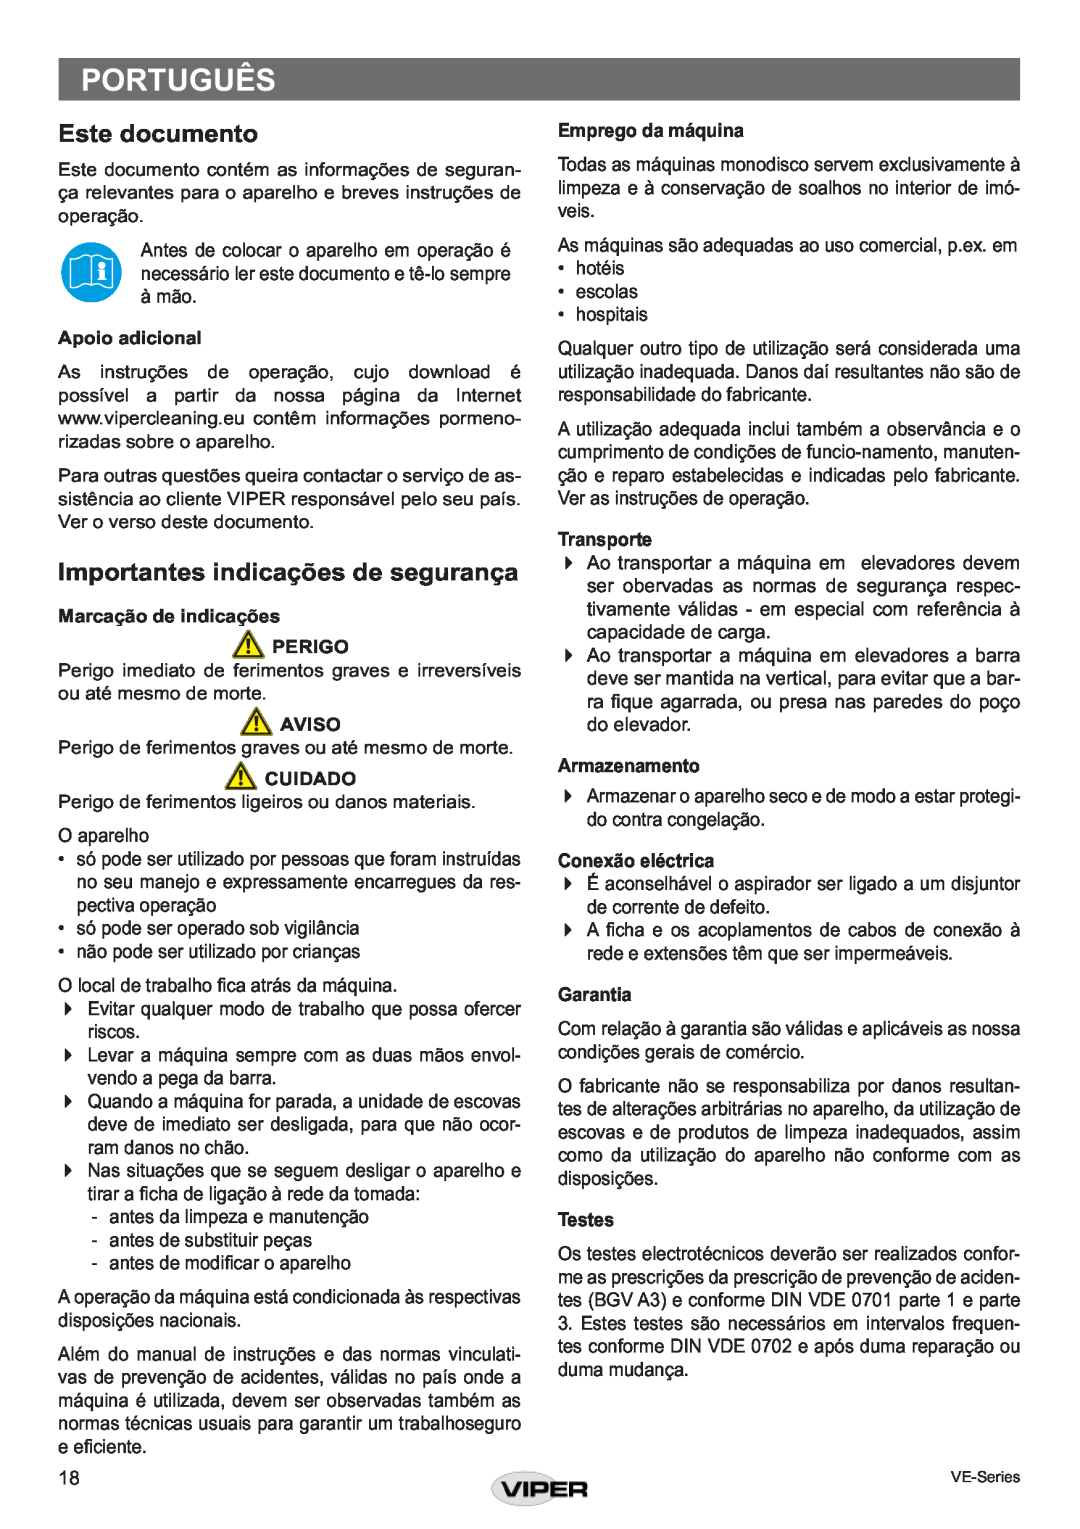 Viper VE 13 P Português, Este documento, Importantes indicações de segurança, Apoio adicional, Aviso, Cuidado, Garantia 